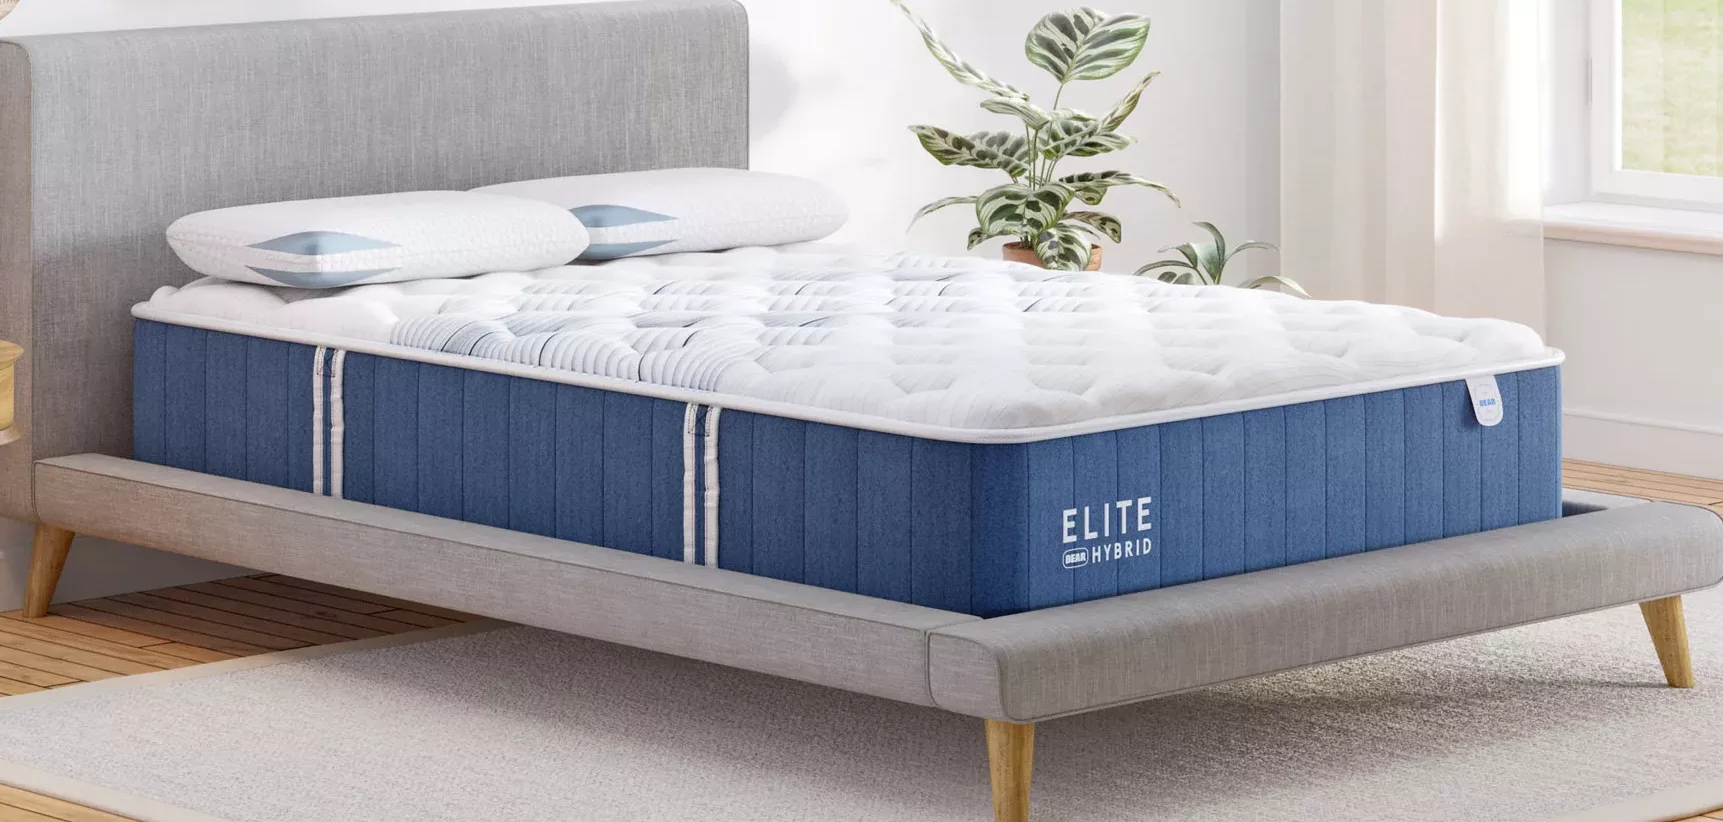 Bear-Elite-Hybrid-Mattress in bedroom setting